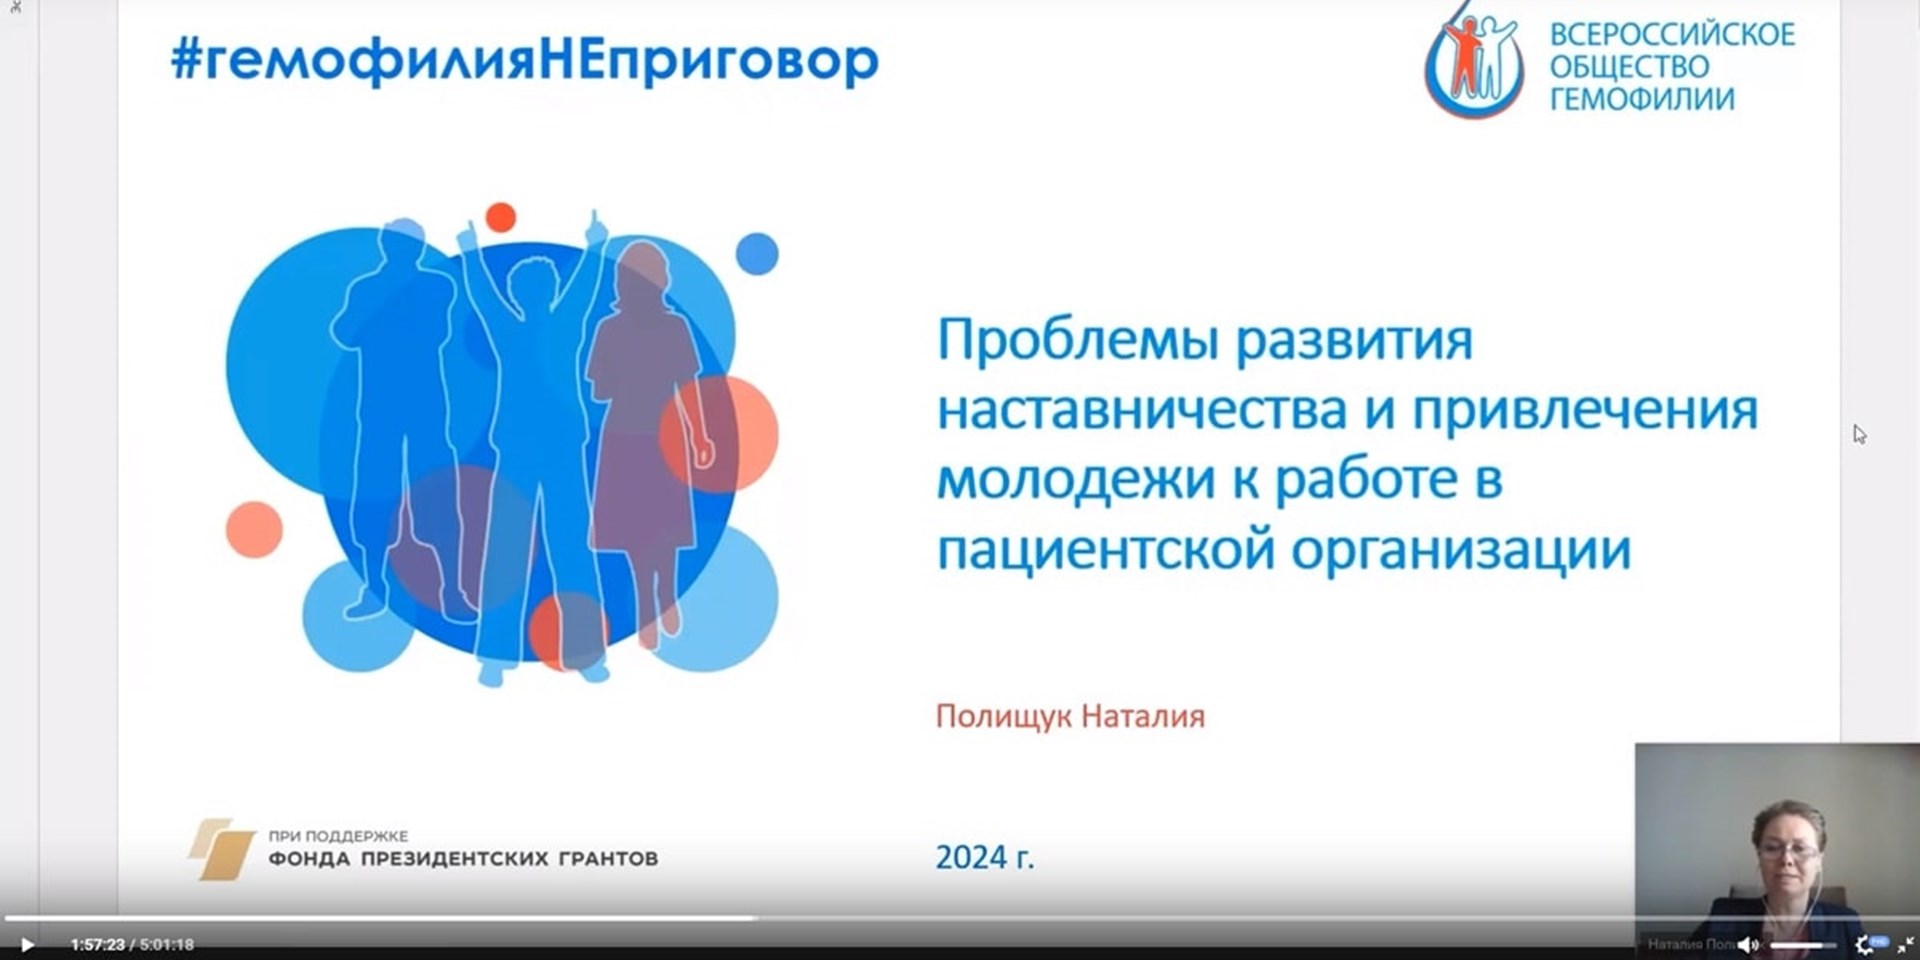 На Орфанном форуме состоялась презентация проекта #гемофилияНЕприговор